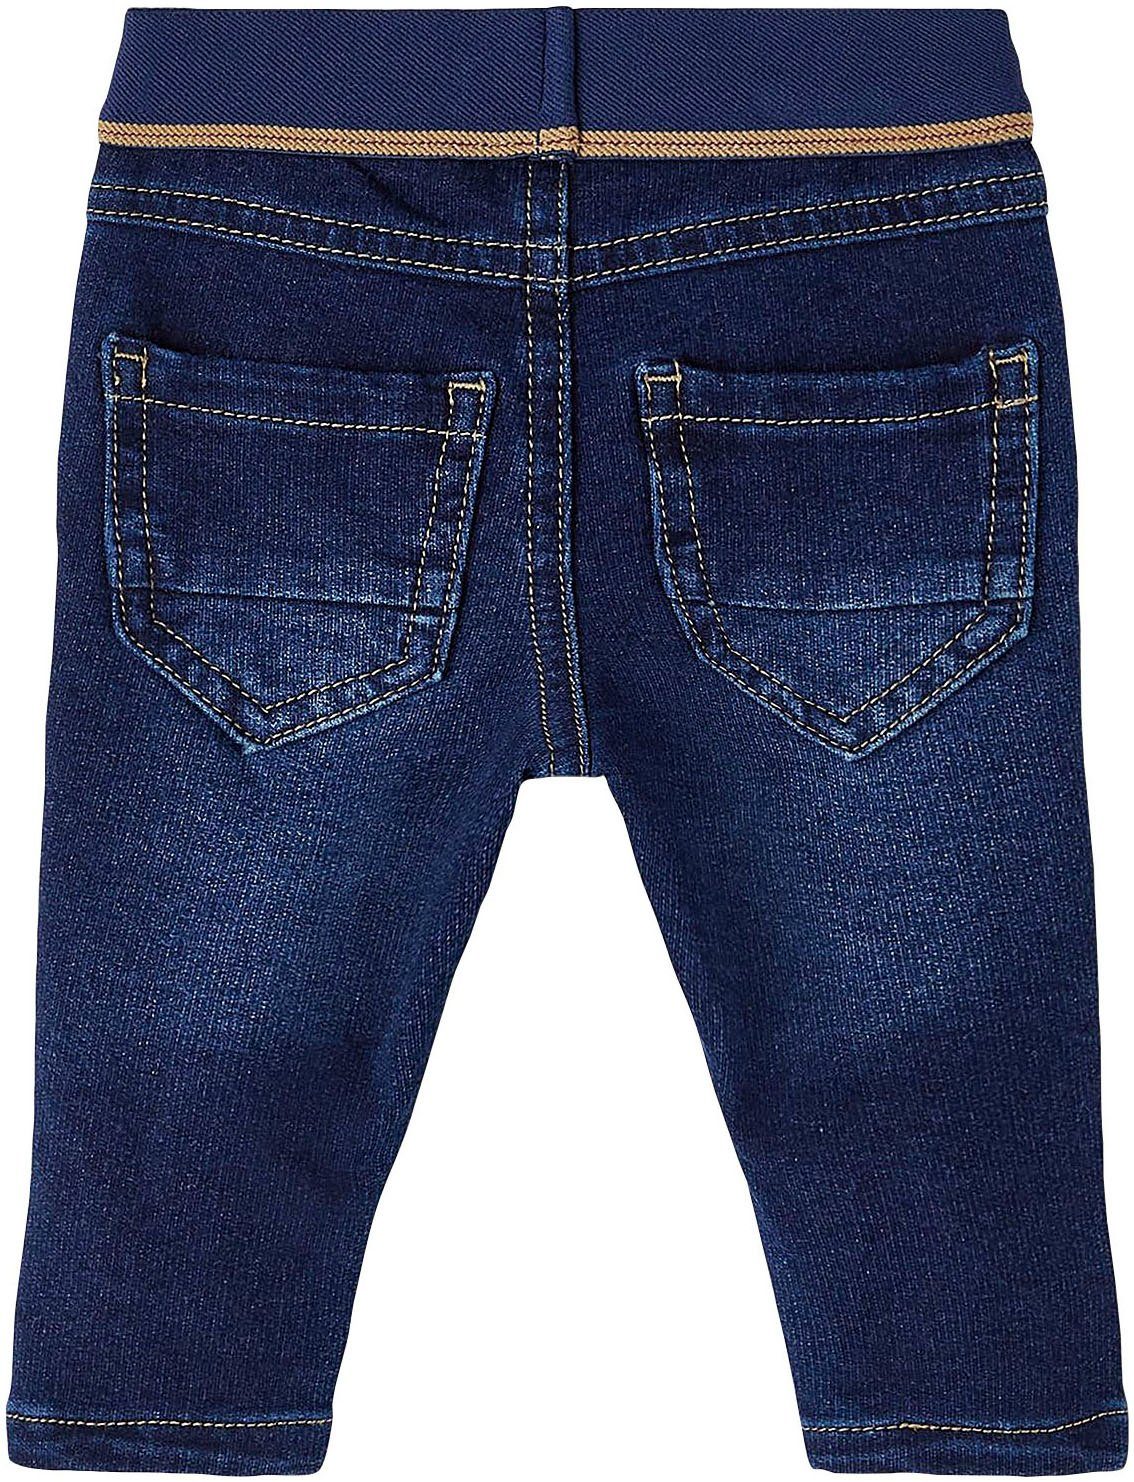 JEANS It NOOS SLIM Slim-fit-Jeans NBMSILAS Name blue SWE 7025-TR dark denim